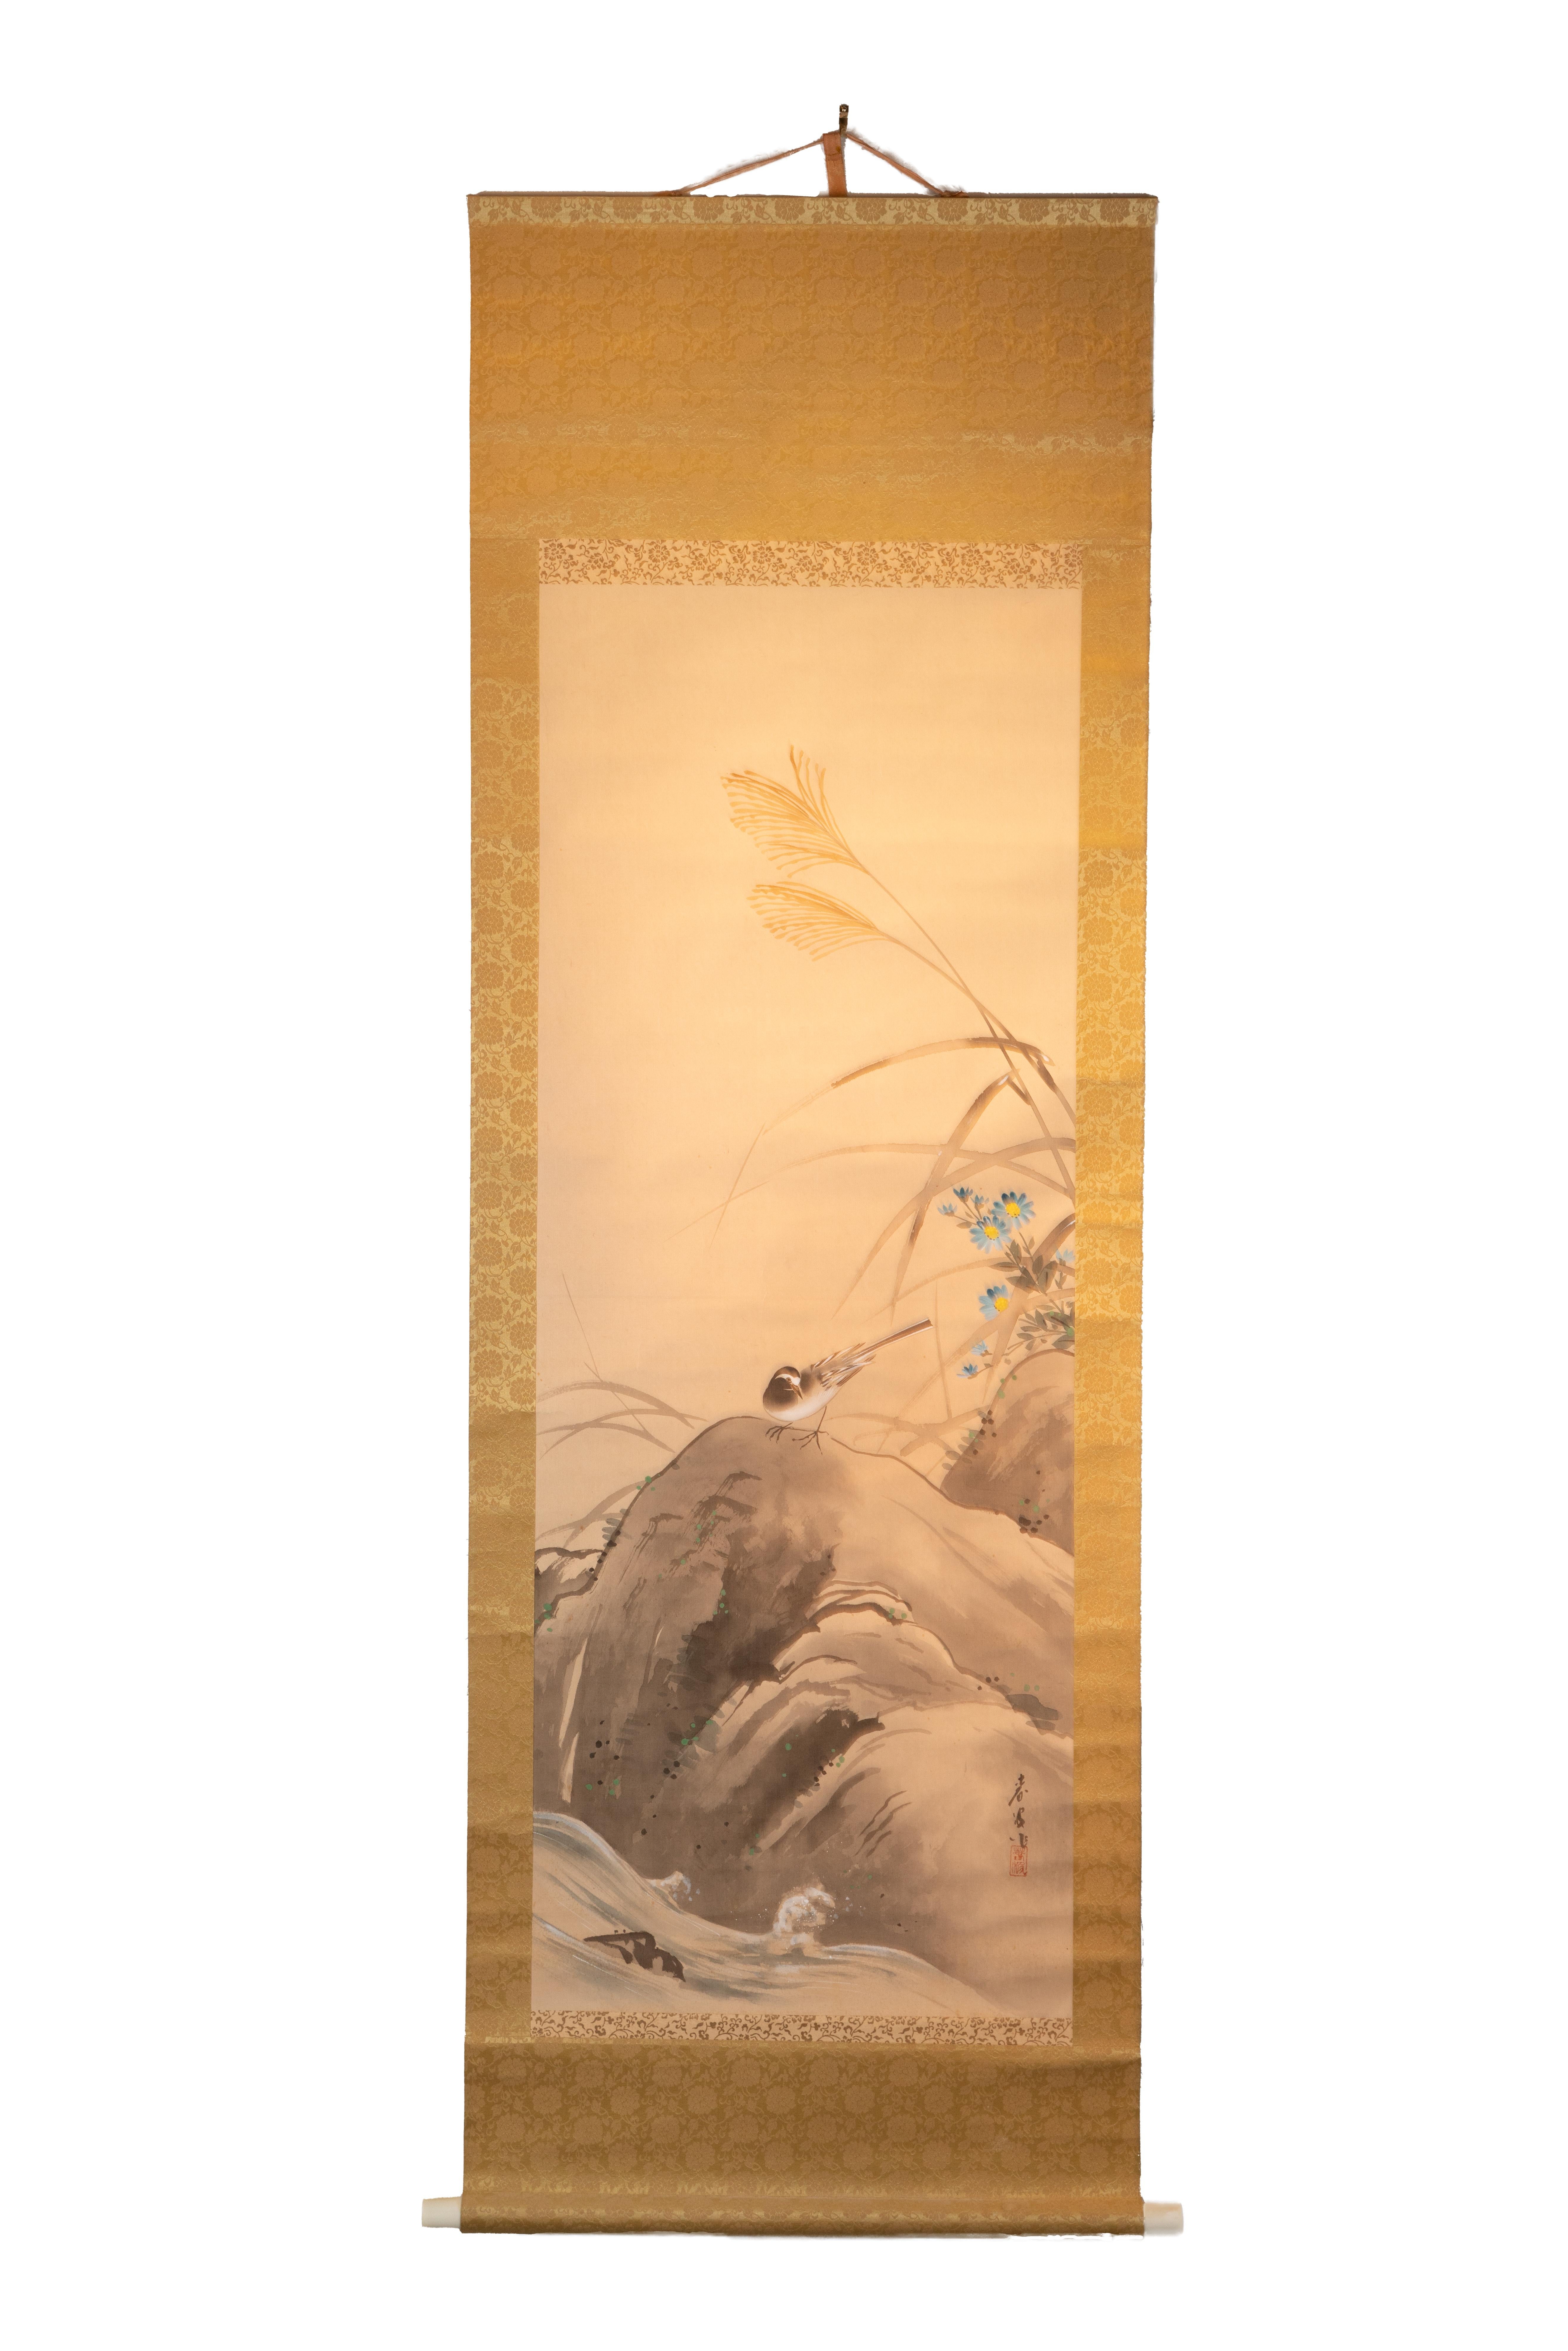 Diese 59" x 20" große antike chinesische Schriftrolle zeigt eine einfache, aber heitere Szene mit einem Vogel auf einem Felsen. Der Vogel steht auf dem Felsen, der im Vergleich zum Vogel viel größer ist. Der Körper des Vogels ist dem Betrachter